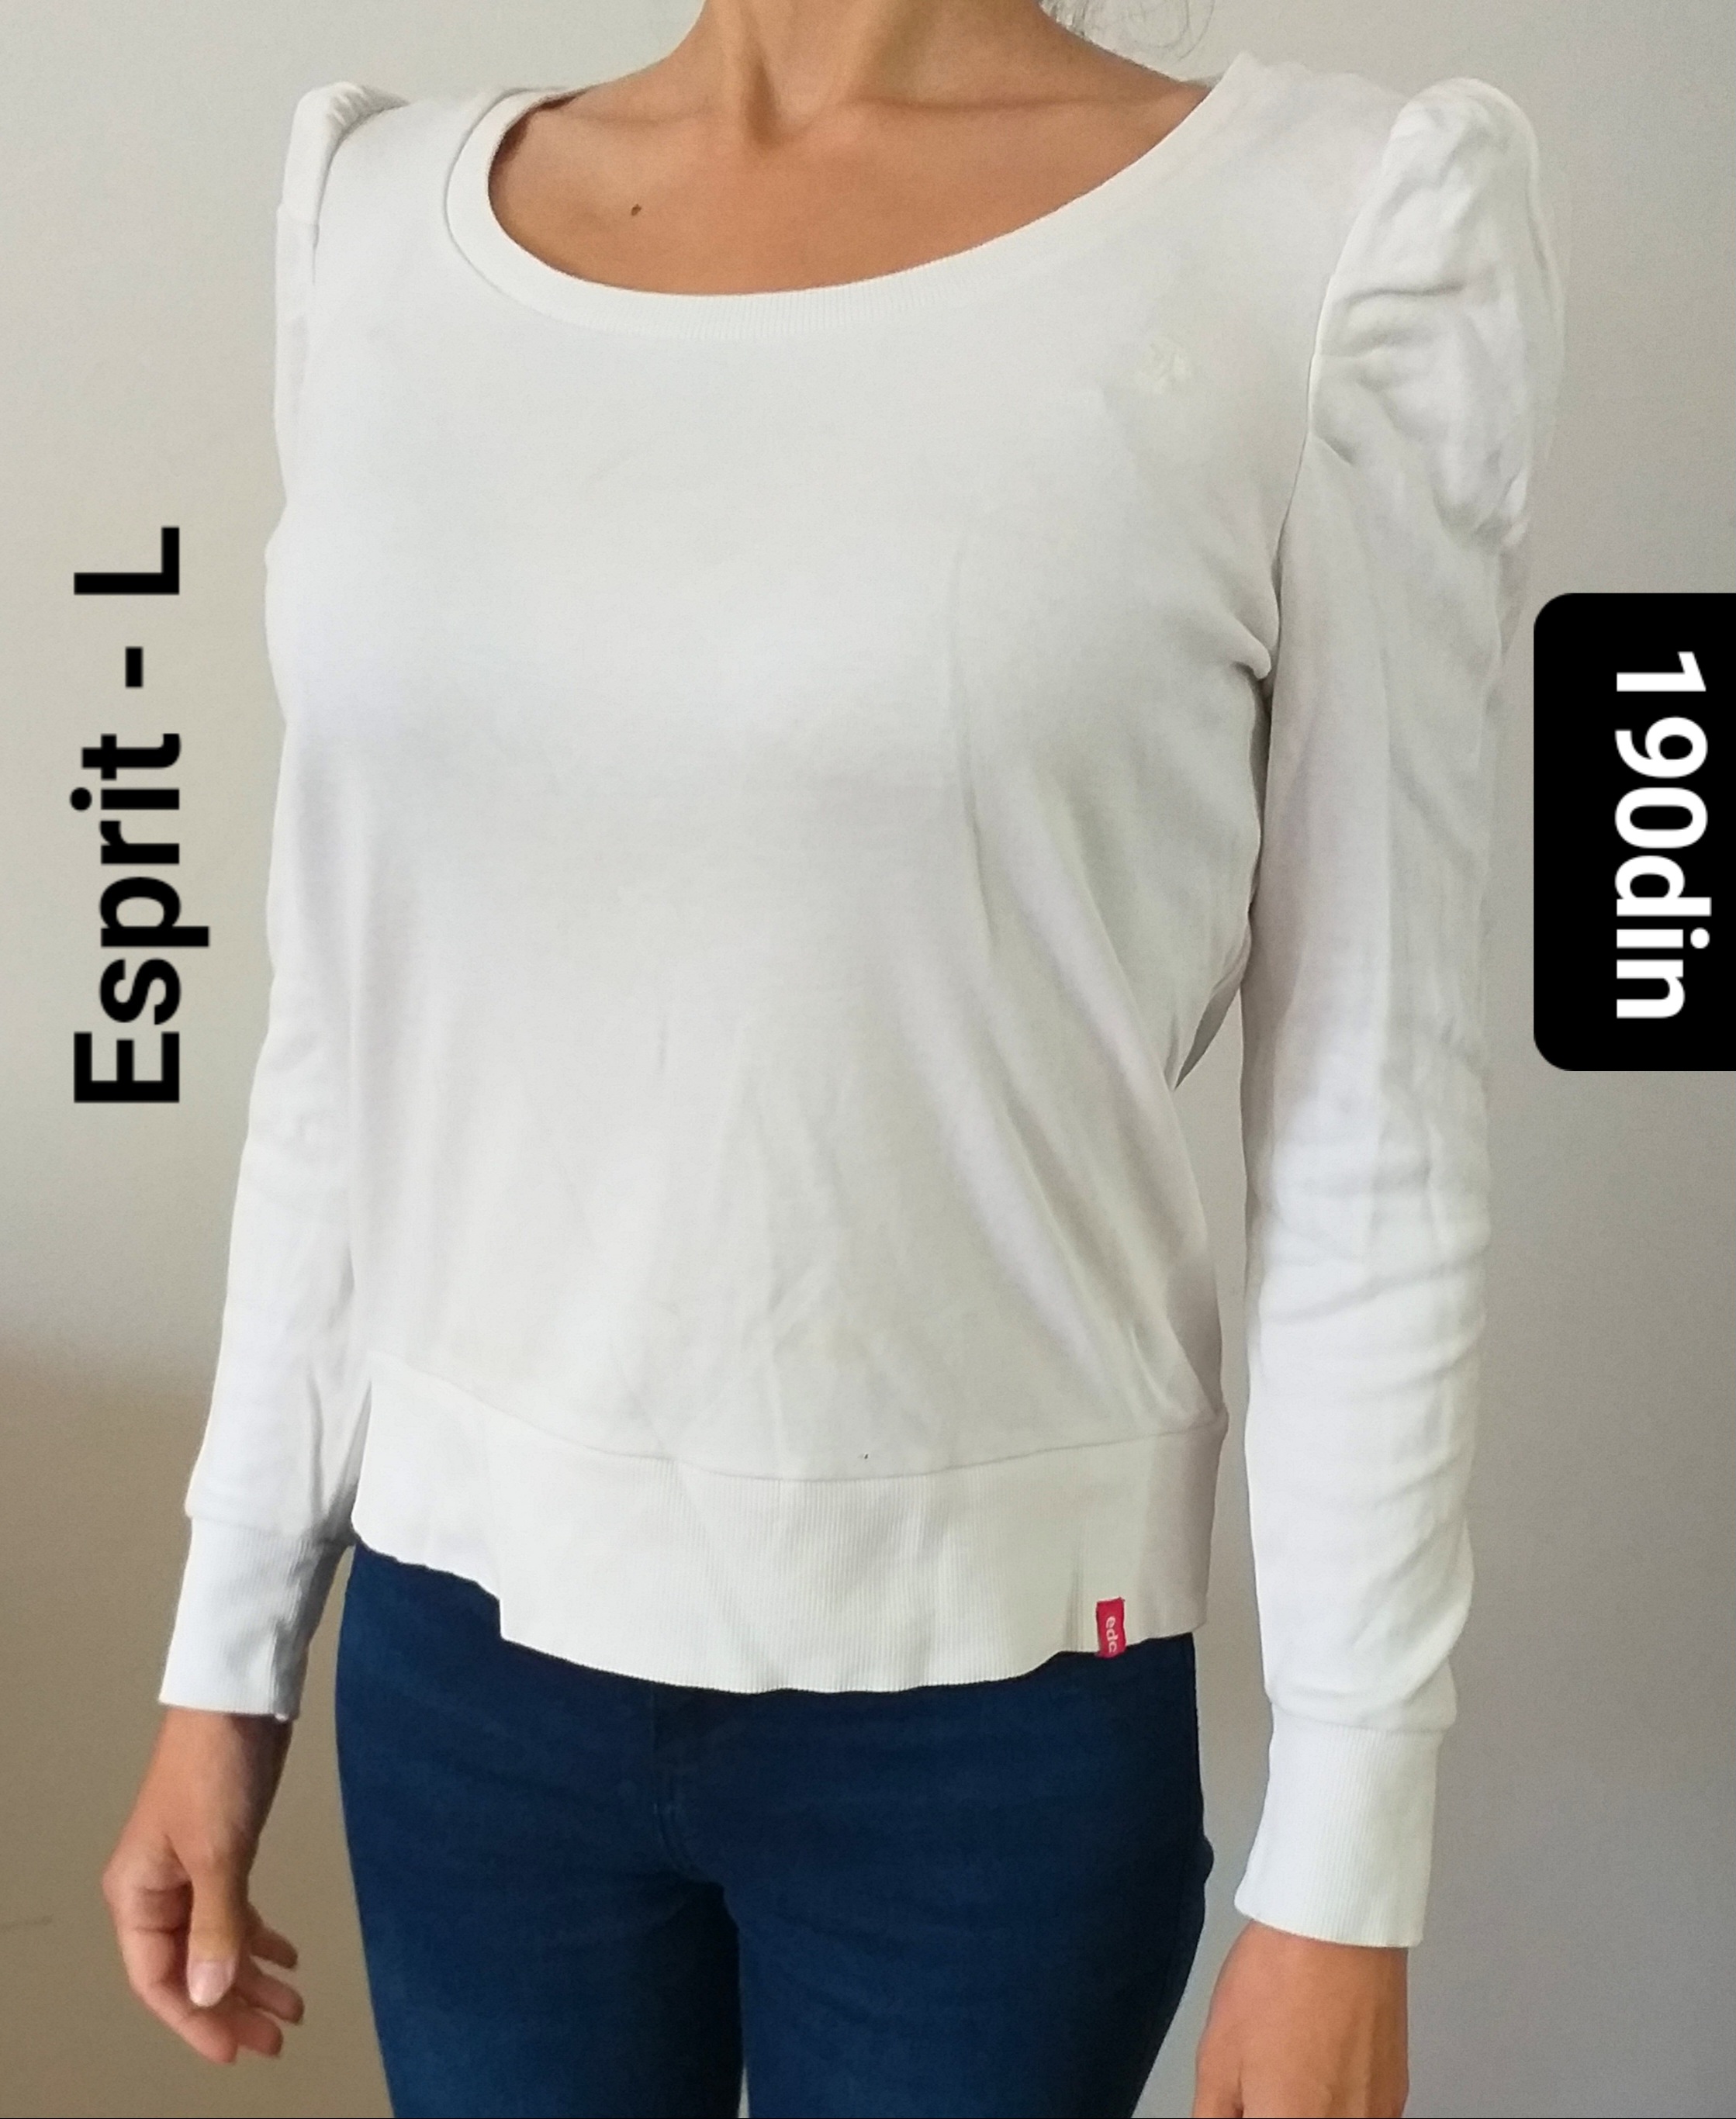 Esprit ženska majica bela dug rukav L/40